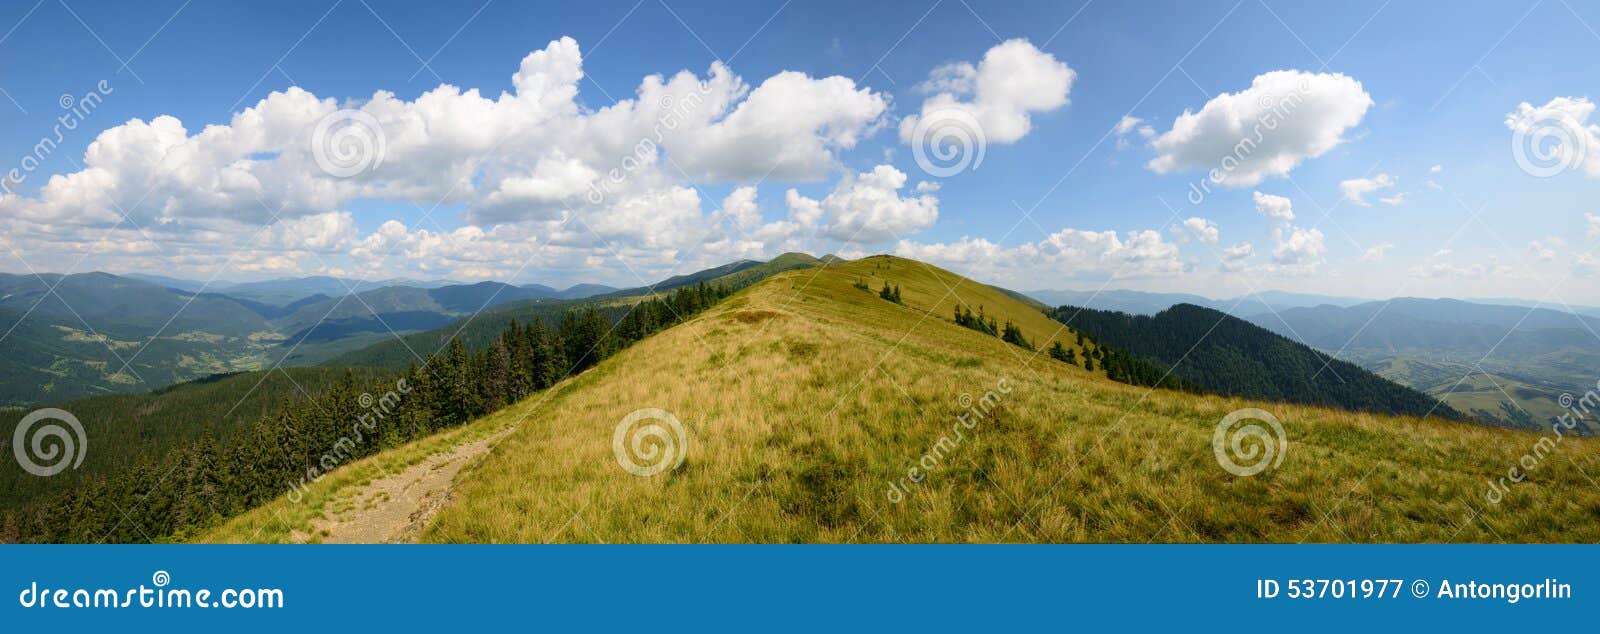 Panoramische dag grasrijke bergen. Het panoramische landschap van de bergendag met gele grassen en een weg langs de rand